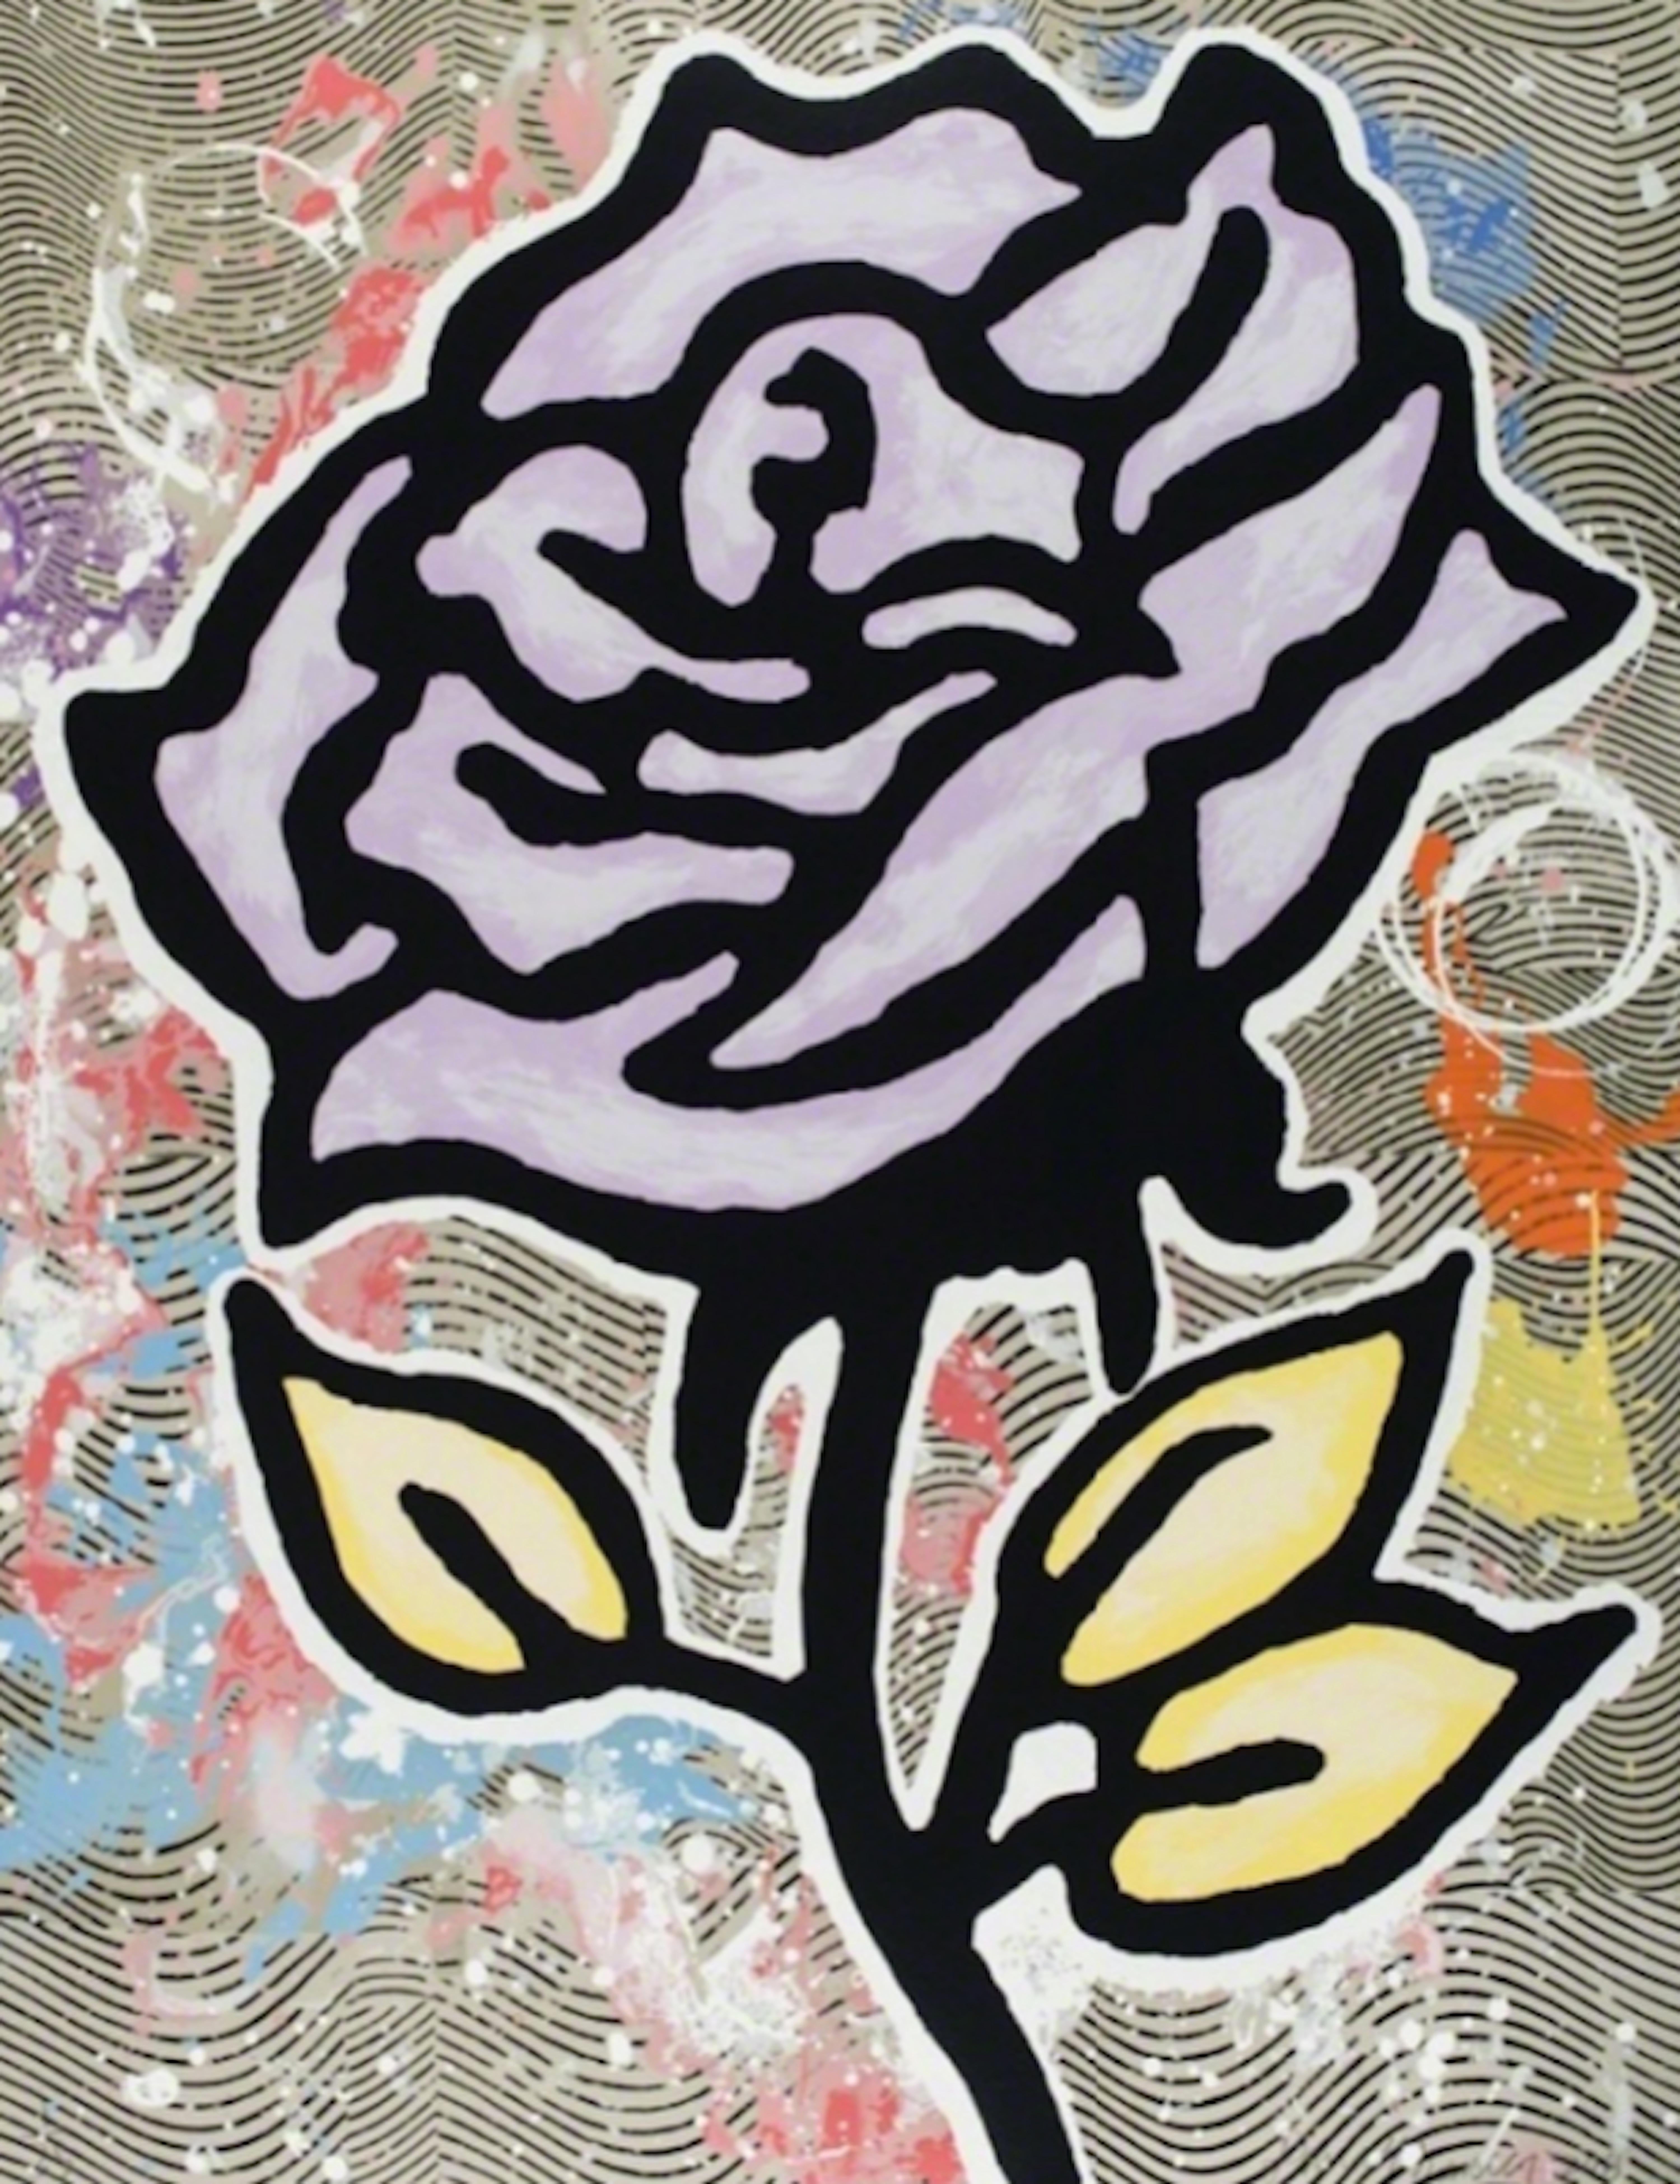 Donald Baechler Figurative Print - Violet Rose